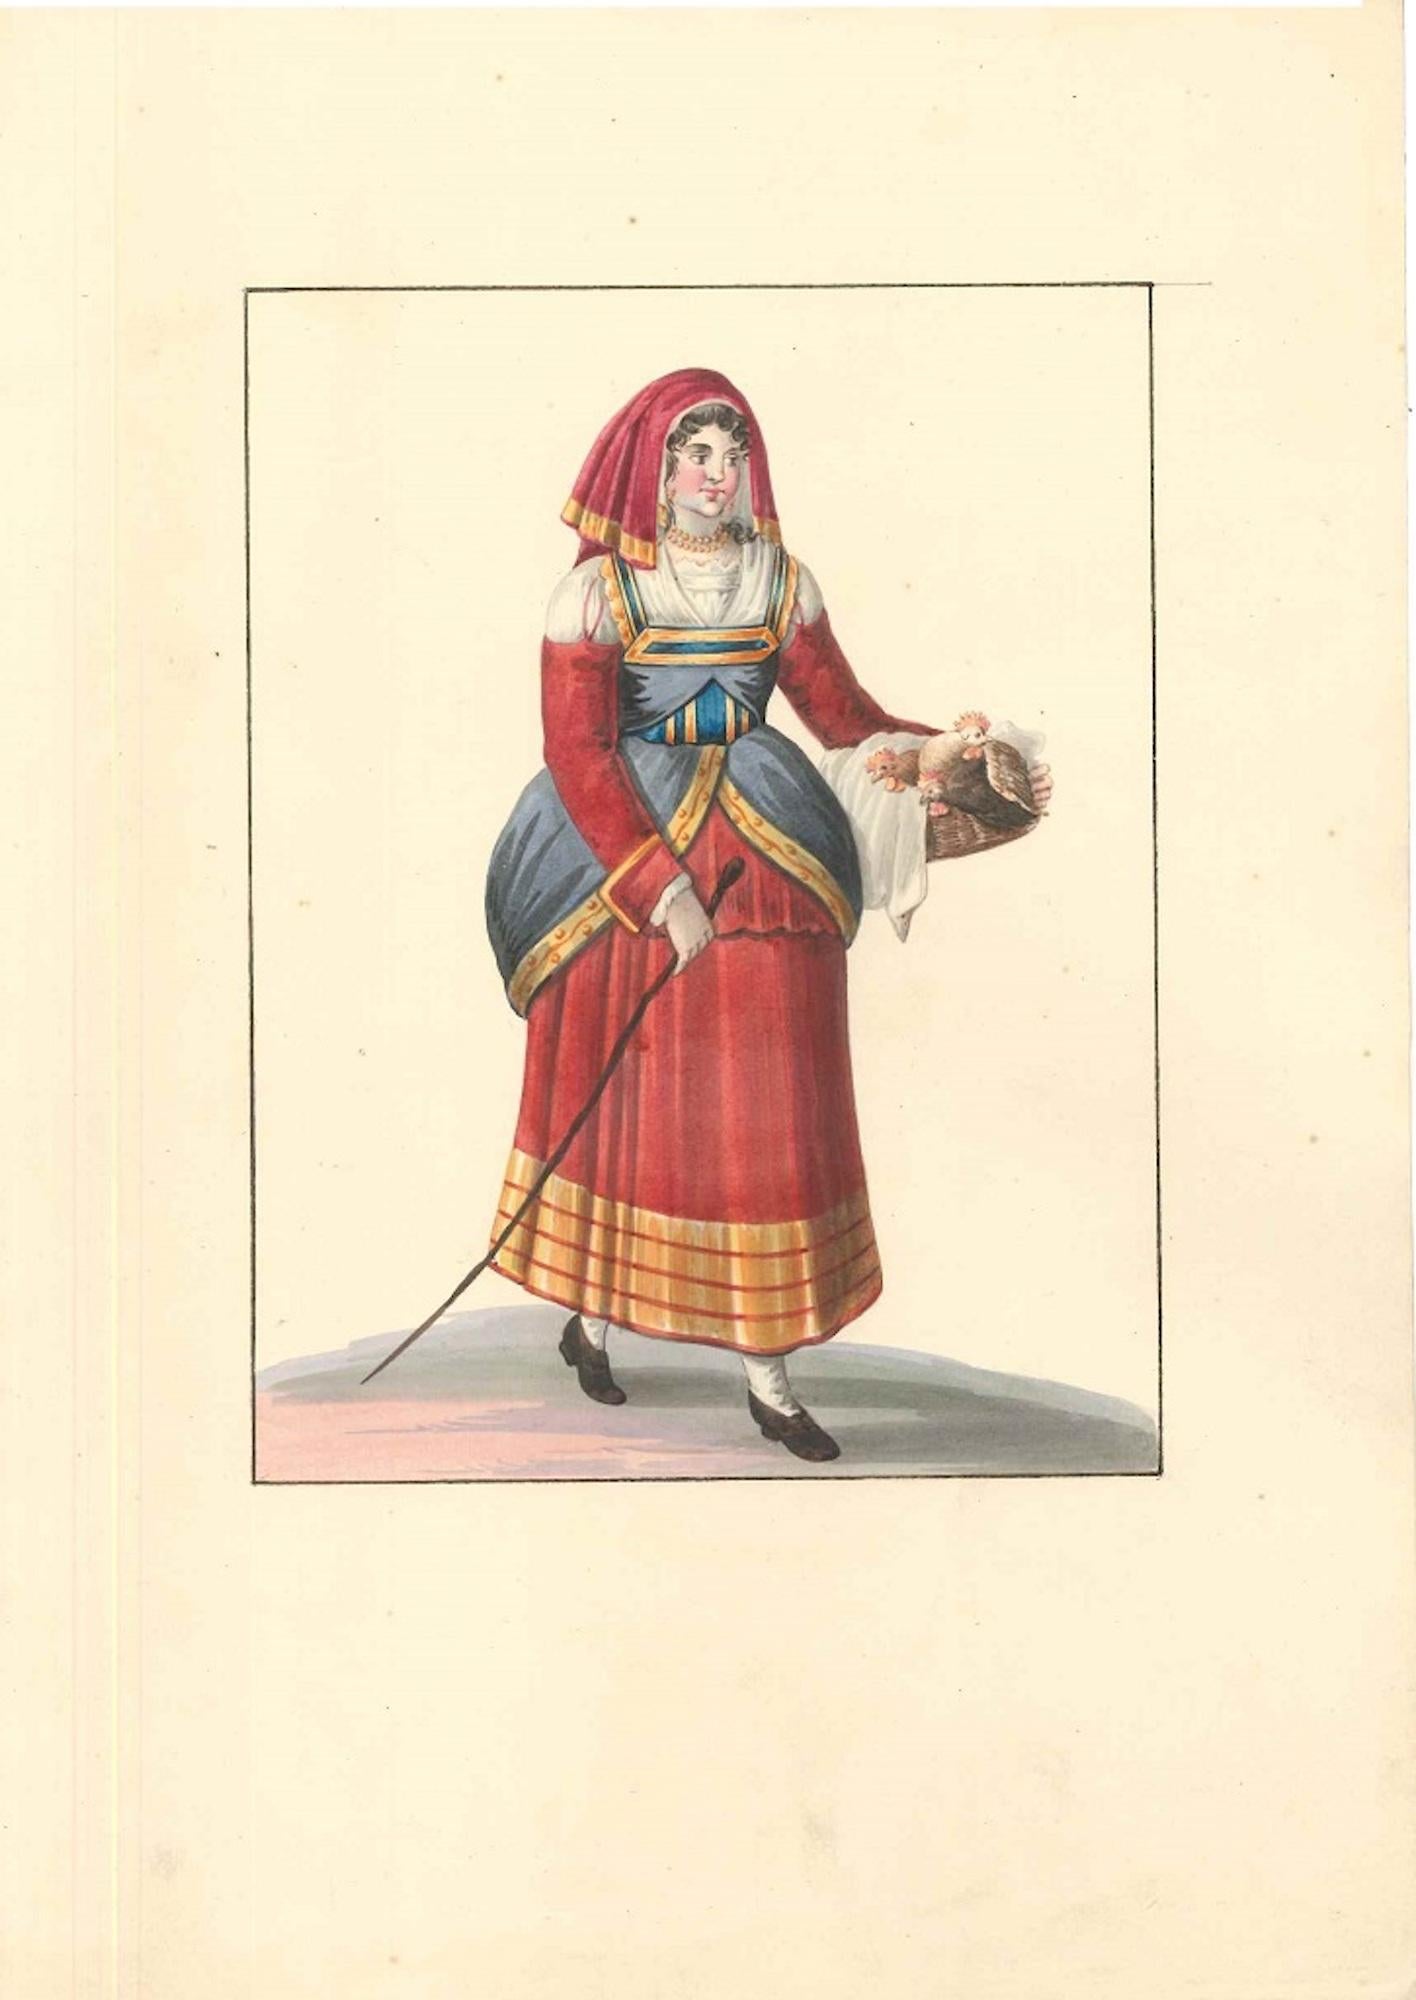 Italian Woman with Chickens - Watercolor by M. De Vito - 1820 ca. - Art by Michela De Vito